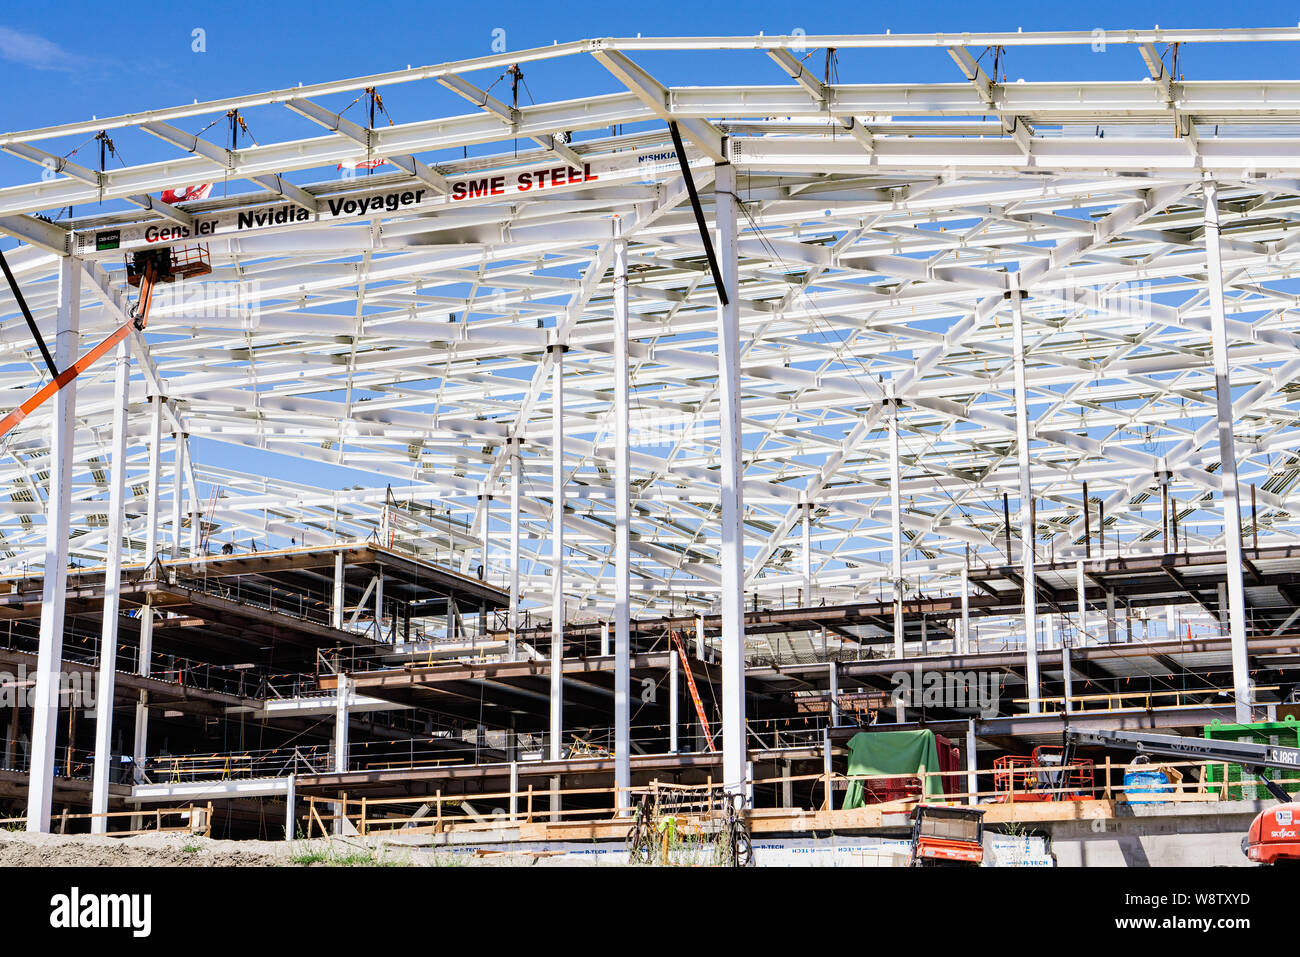 9 août 2019 Santa Clara / CA / USA - Le nouveau, Nvidia massive Voyager bâtiment en construction au campus d'entreprise dans la Silicon Valle Banque D'Images